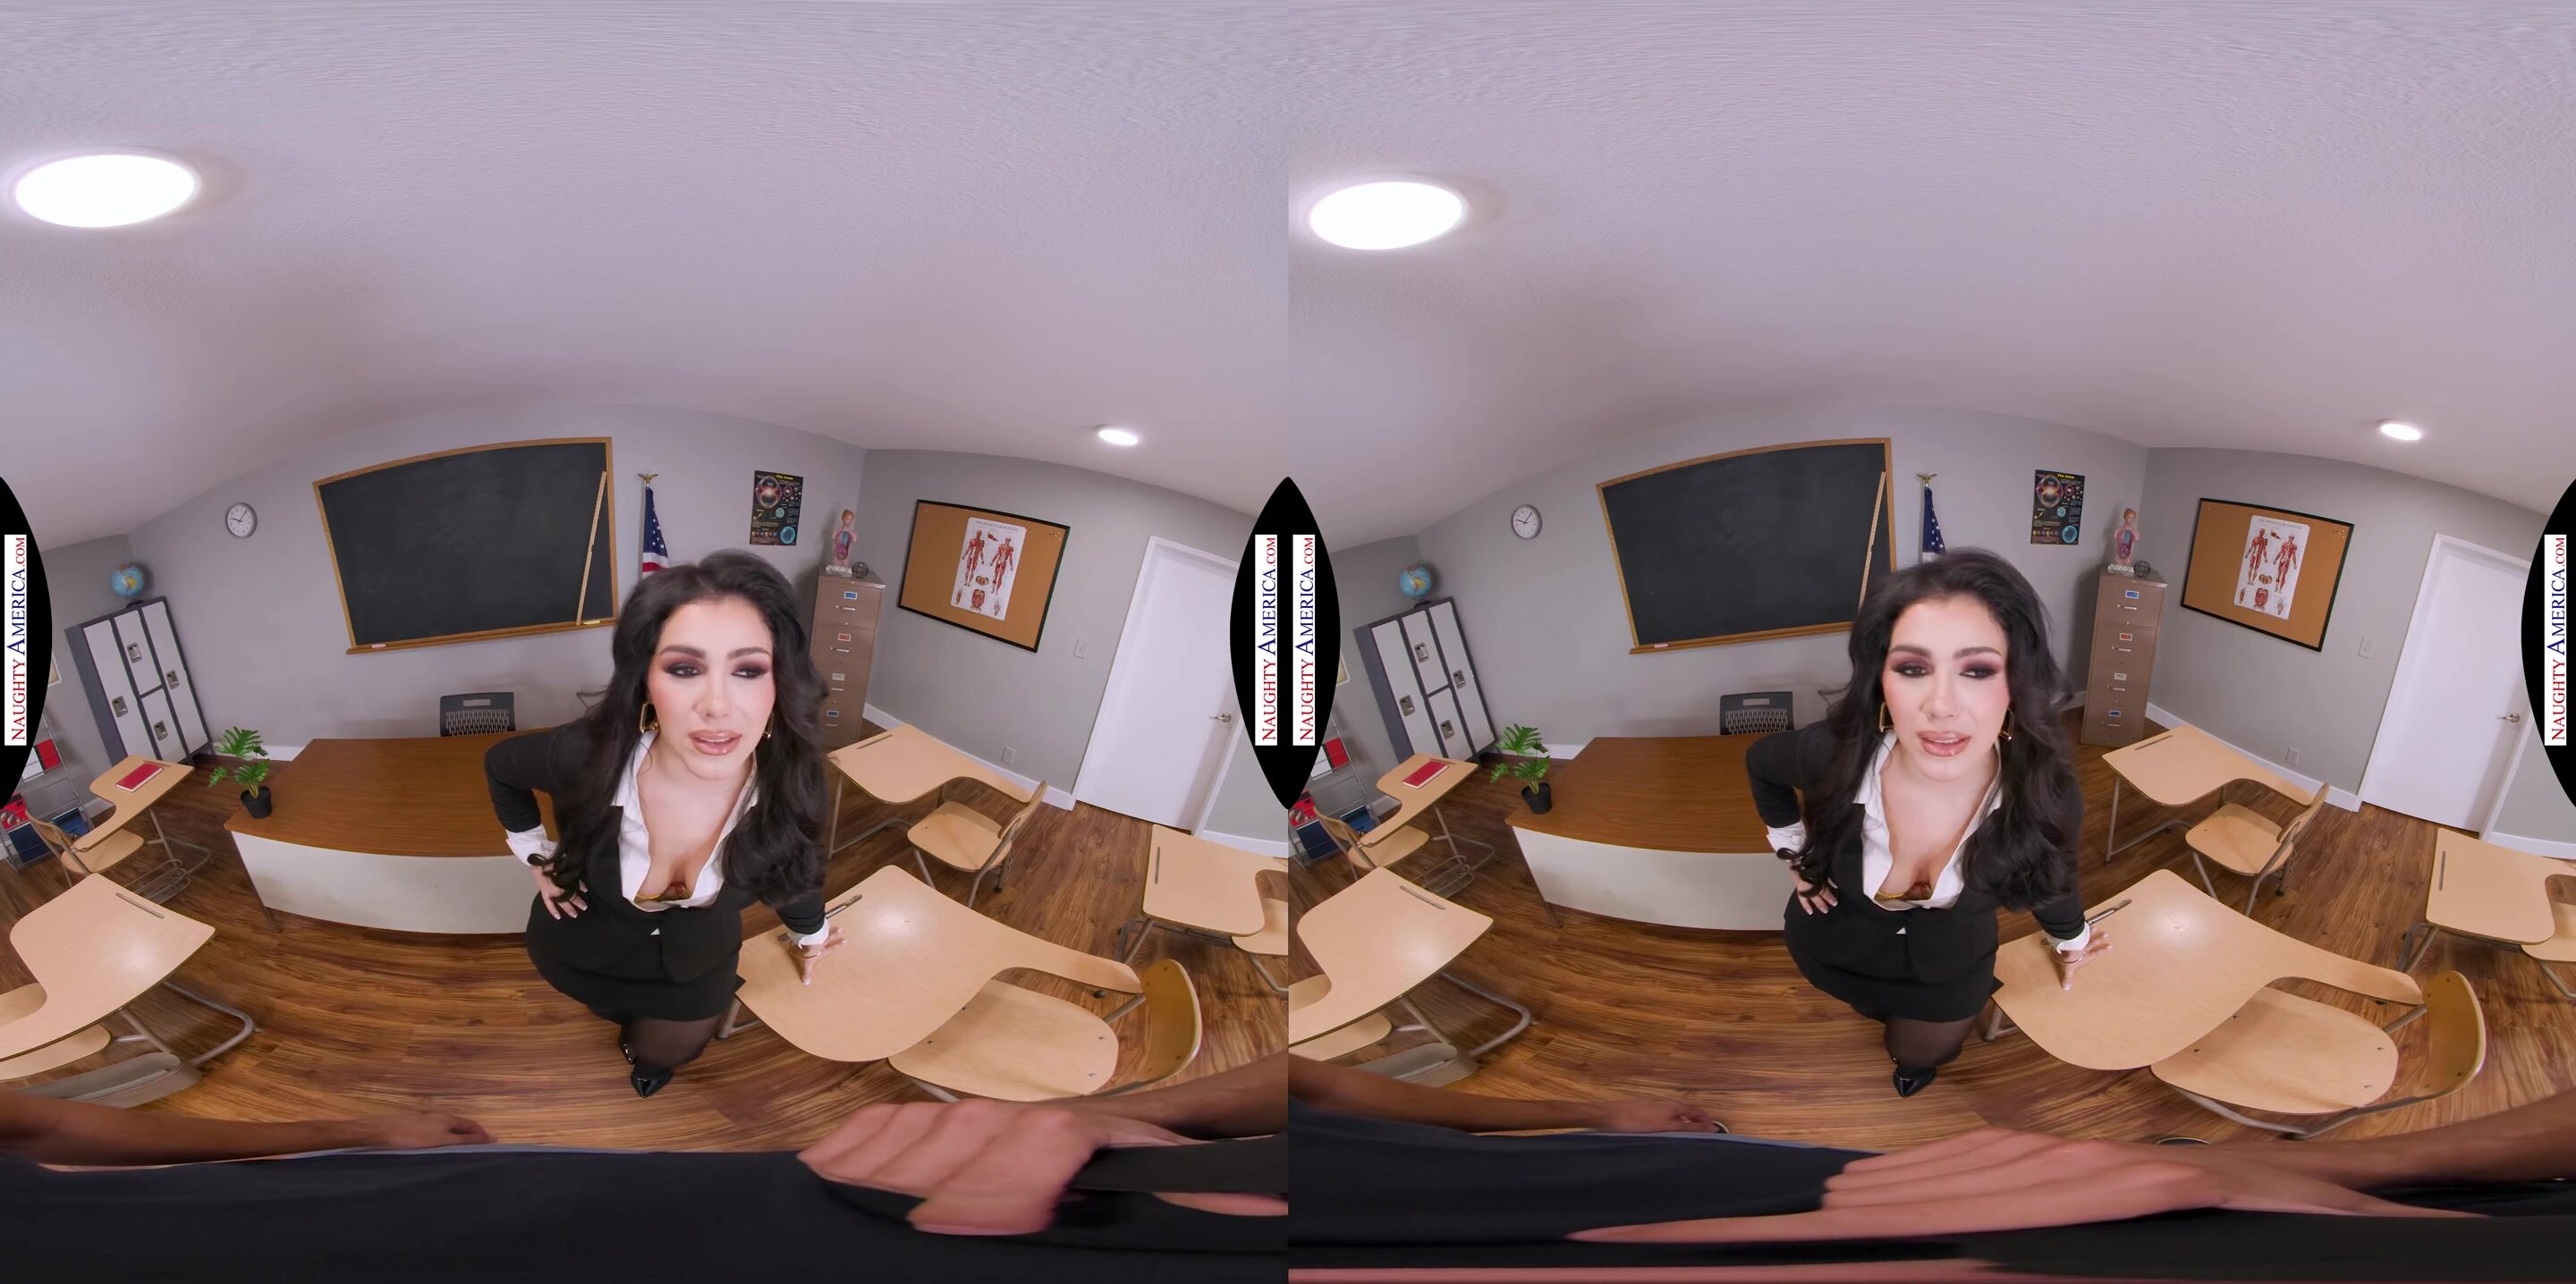 Valentina Nappi - Naughty America VR in HD